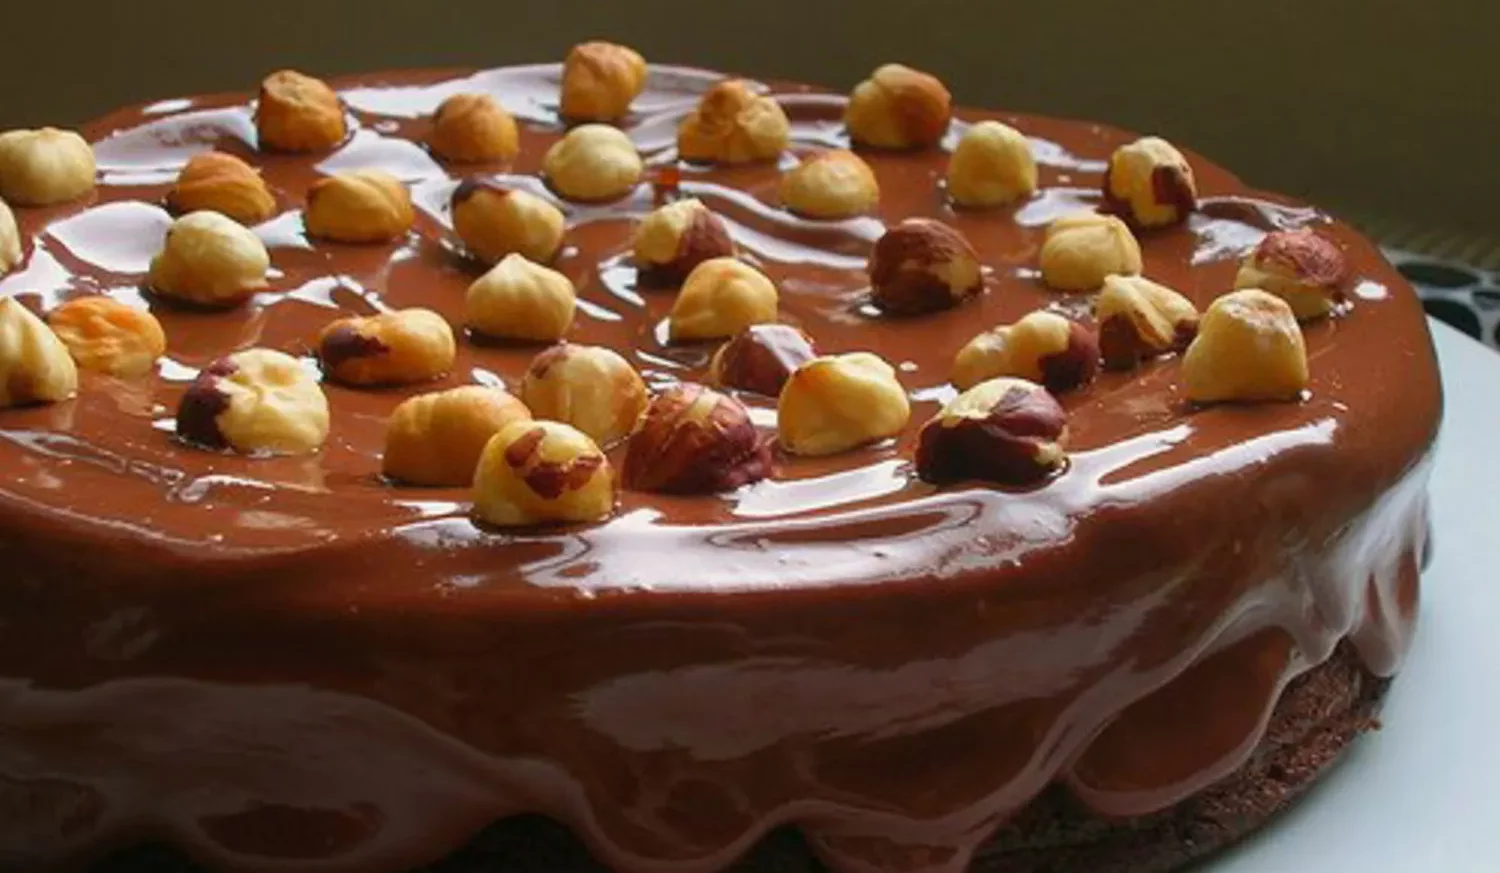 Chocolate hazelnut spread cake